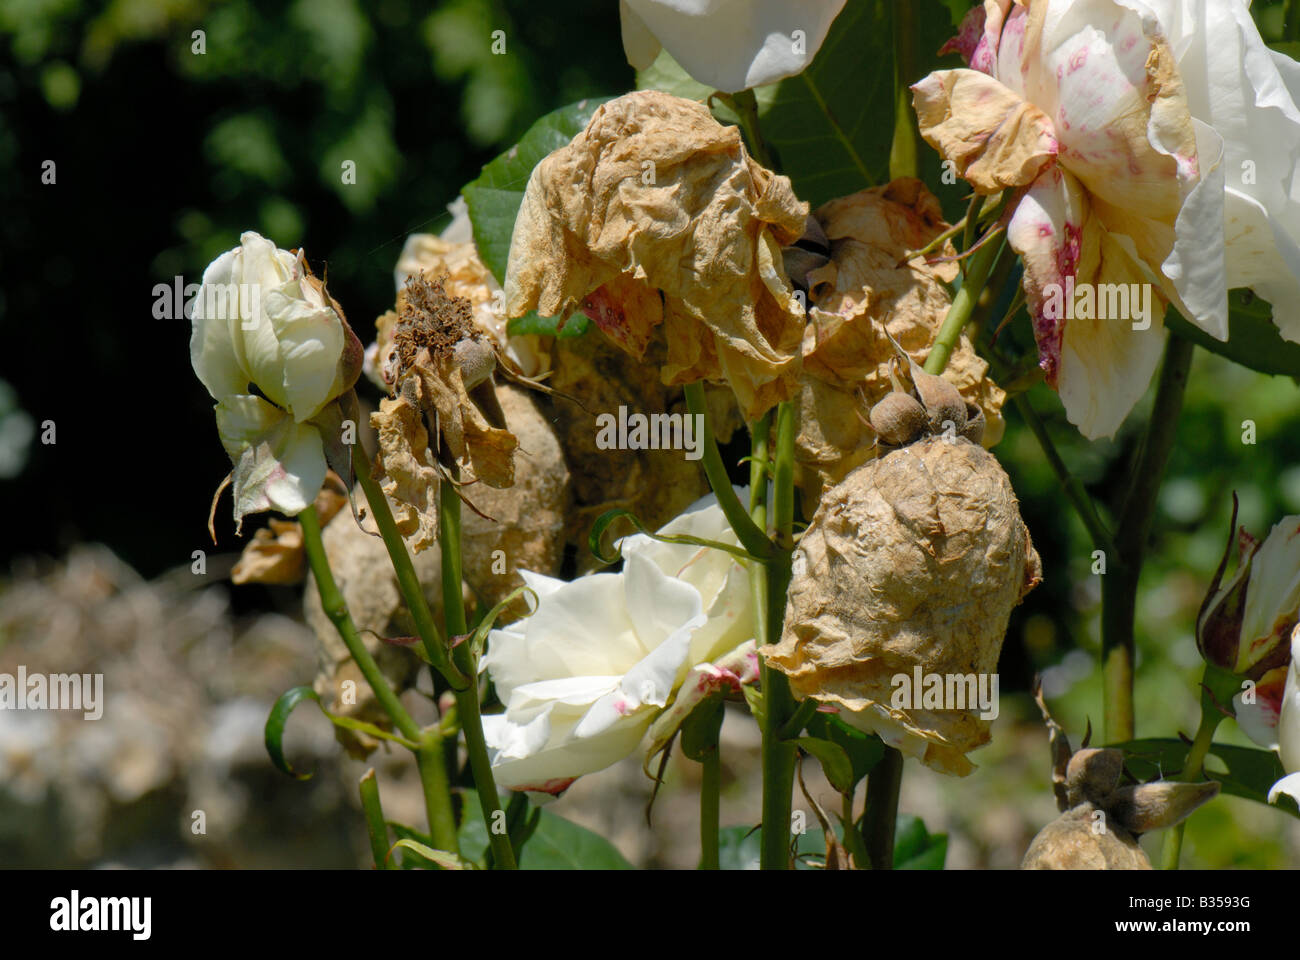 Rose Blumen Knospen von Grauschimmel Botrytis Cinerea bei feuchter  Witterung betroffen Stockfotografie - Alamy